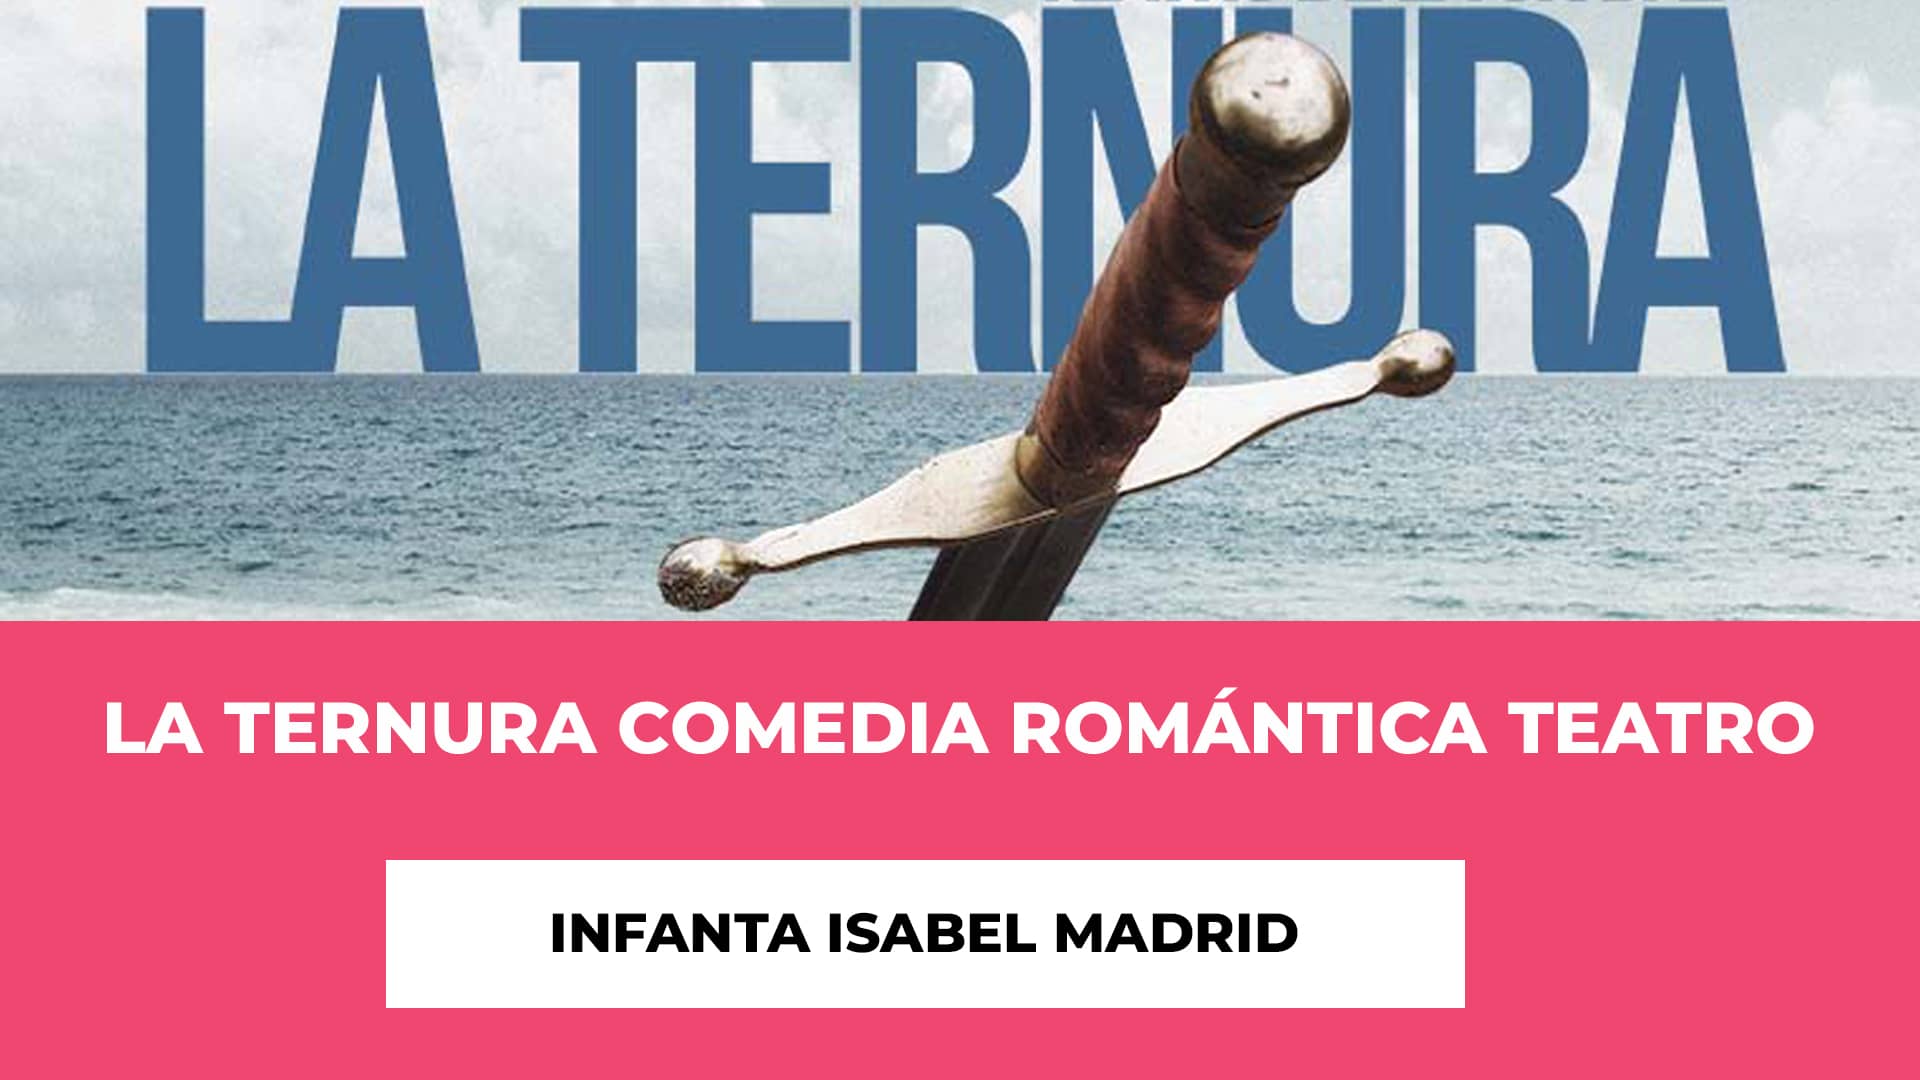 La Ternura Comedia Romántica Teatro Infanta Isabel Madrid - Elenco - Fecha - Recinto - Precios Entradas, Horarios Funciones